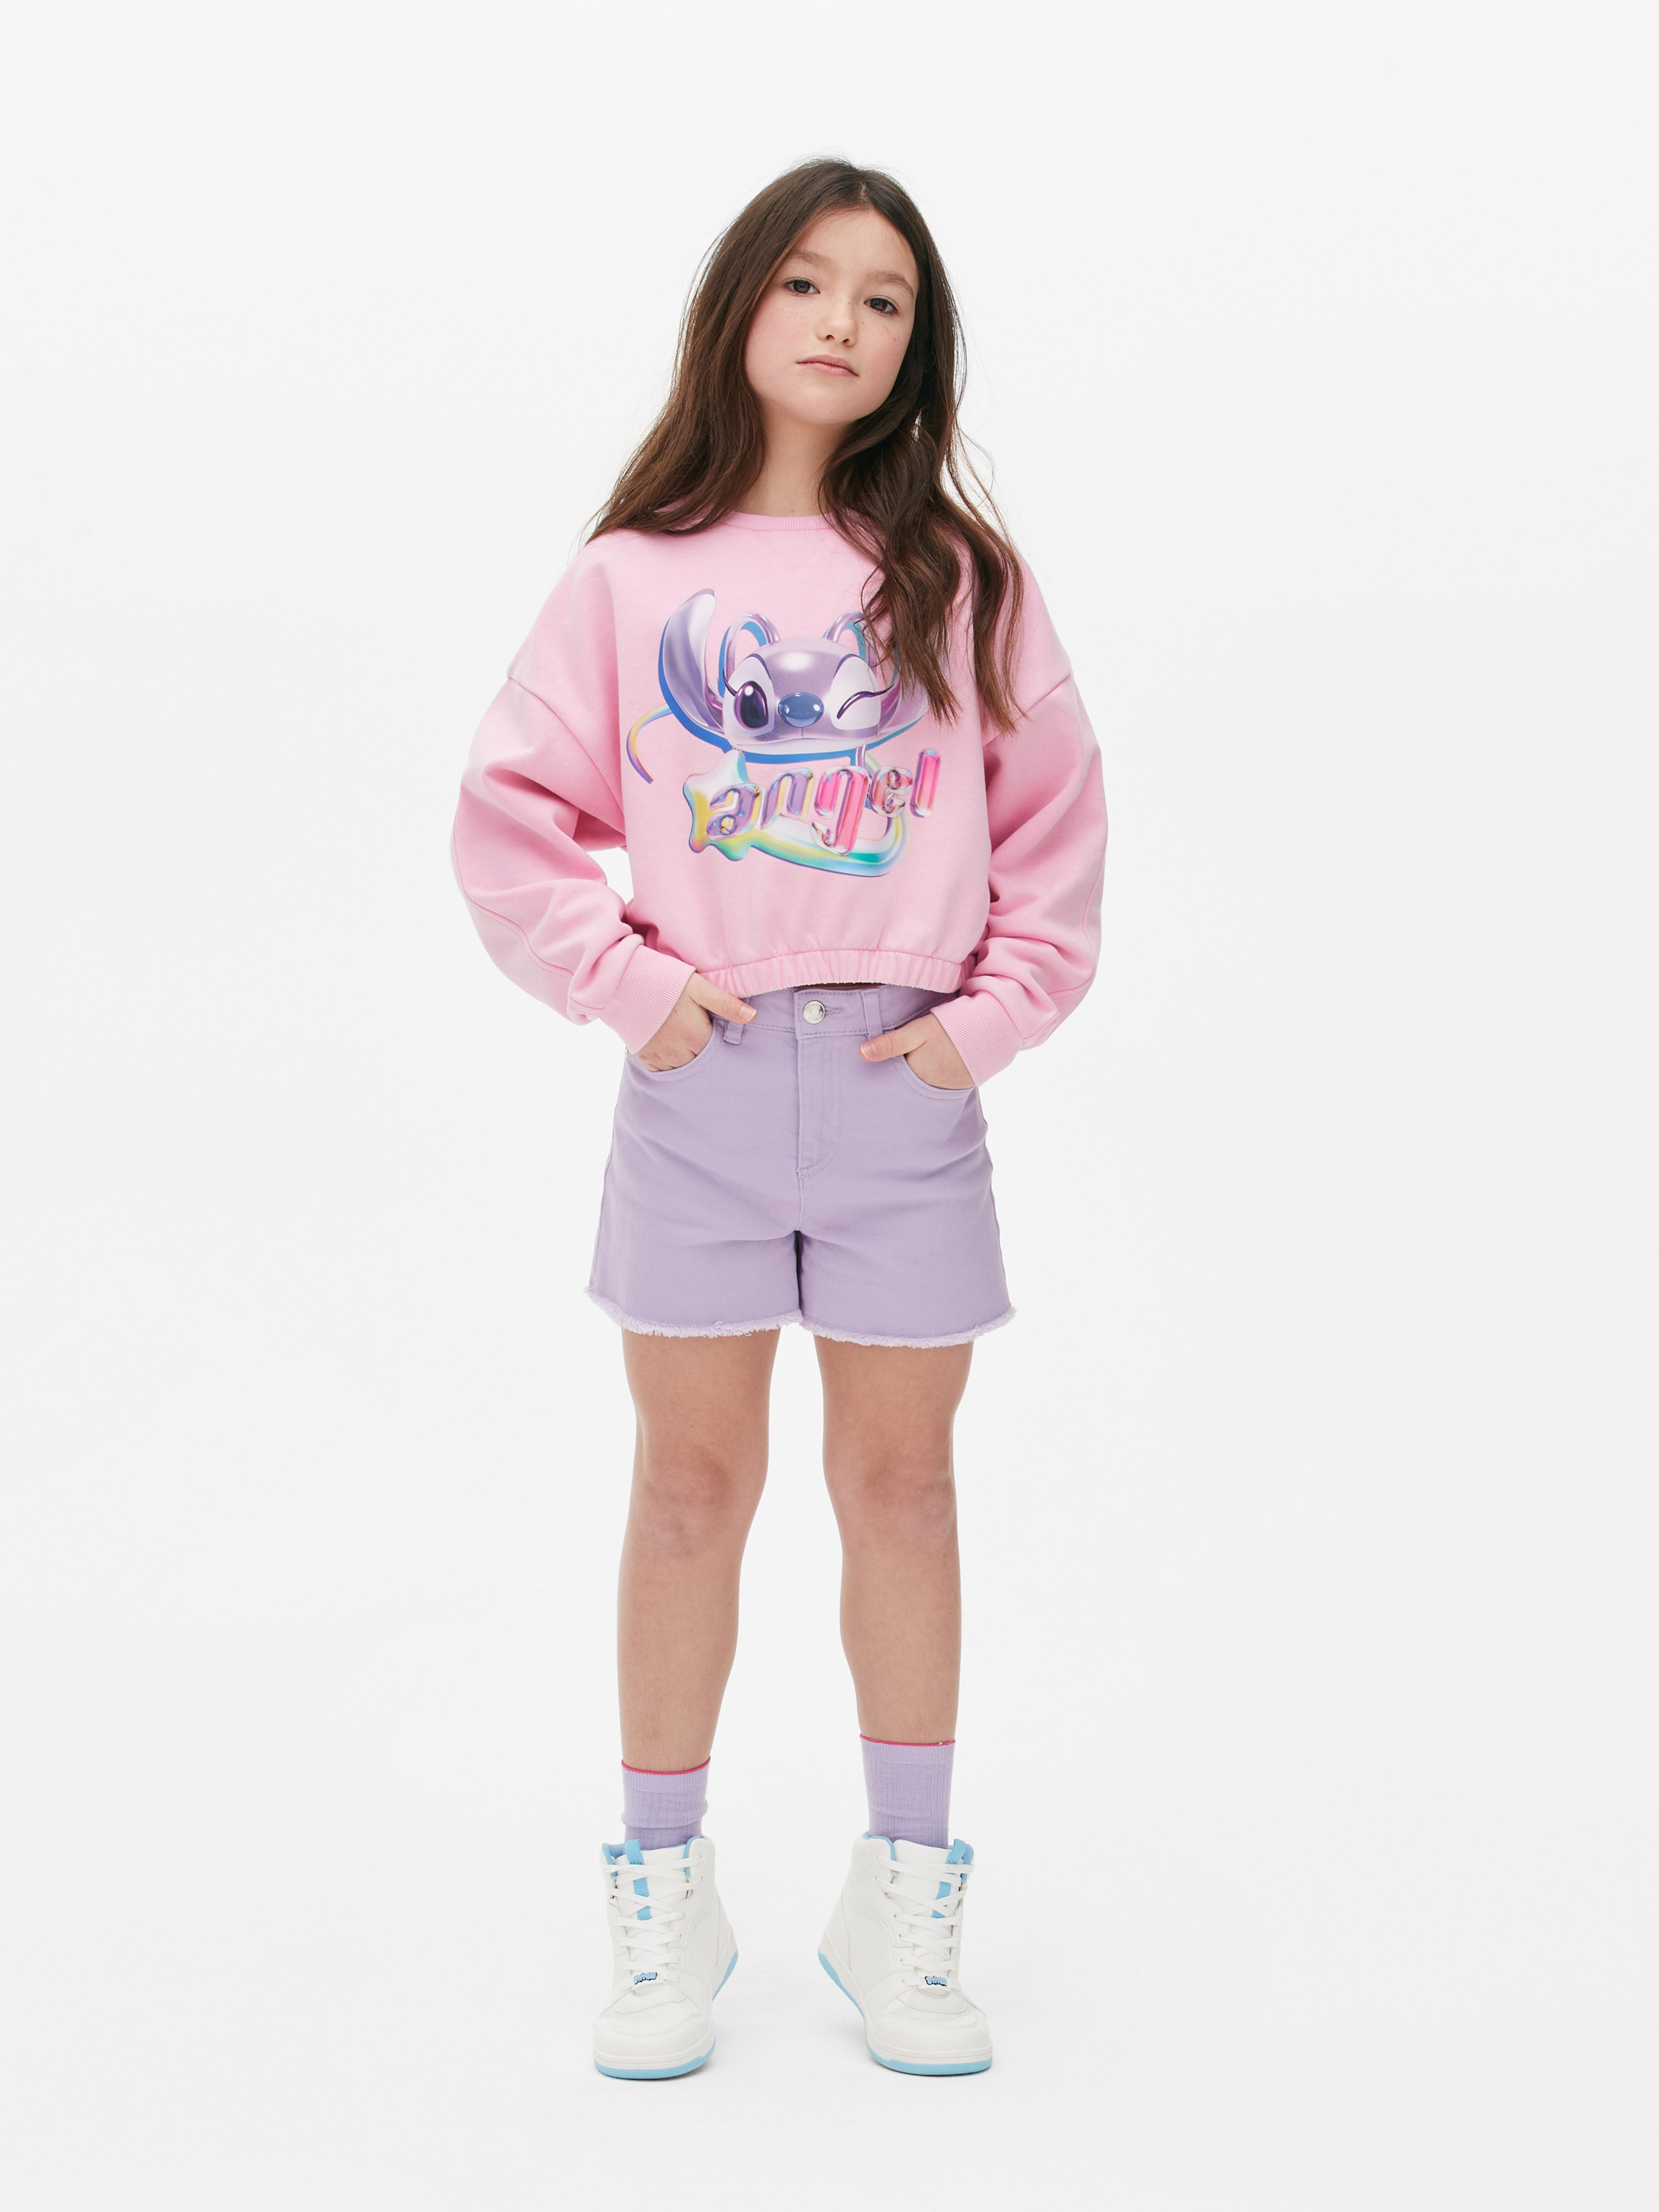 Disney’s Lilo & Stitch Angel Sweatshirt